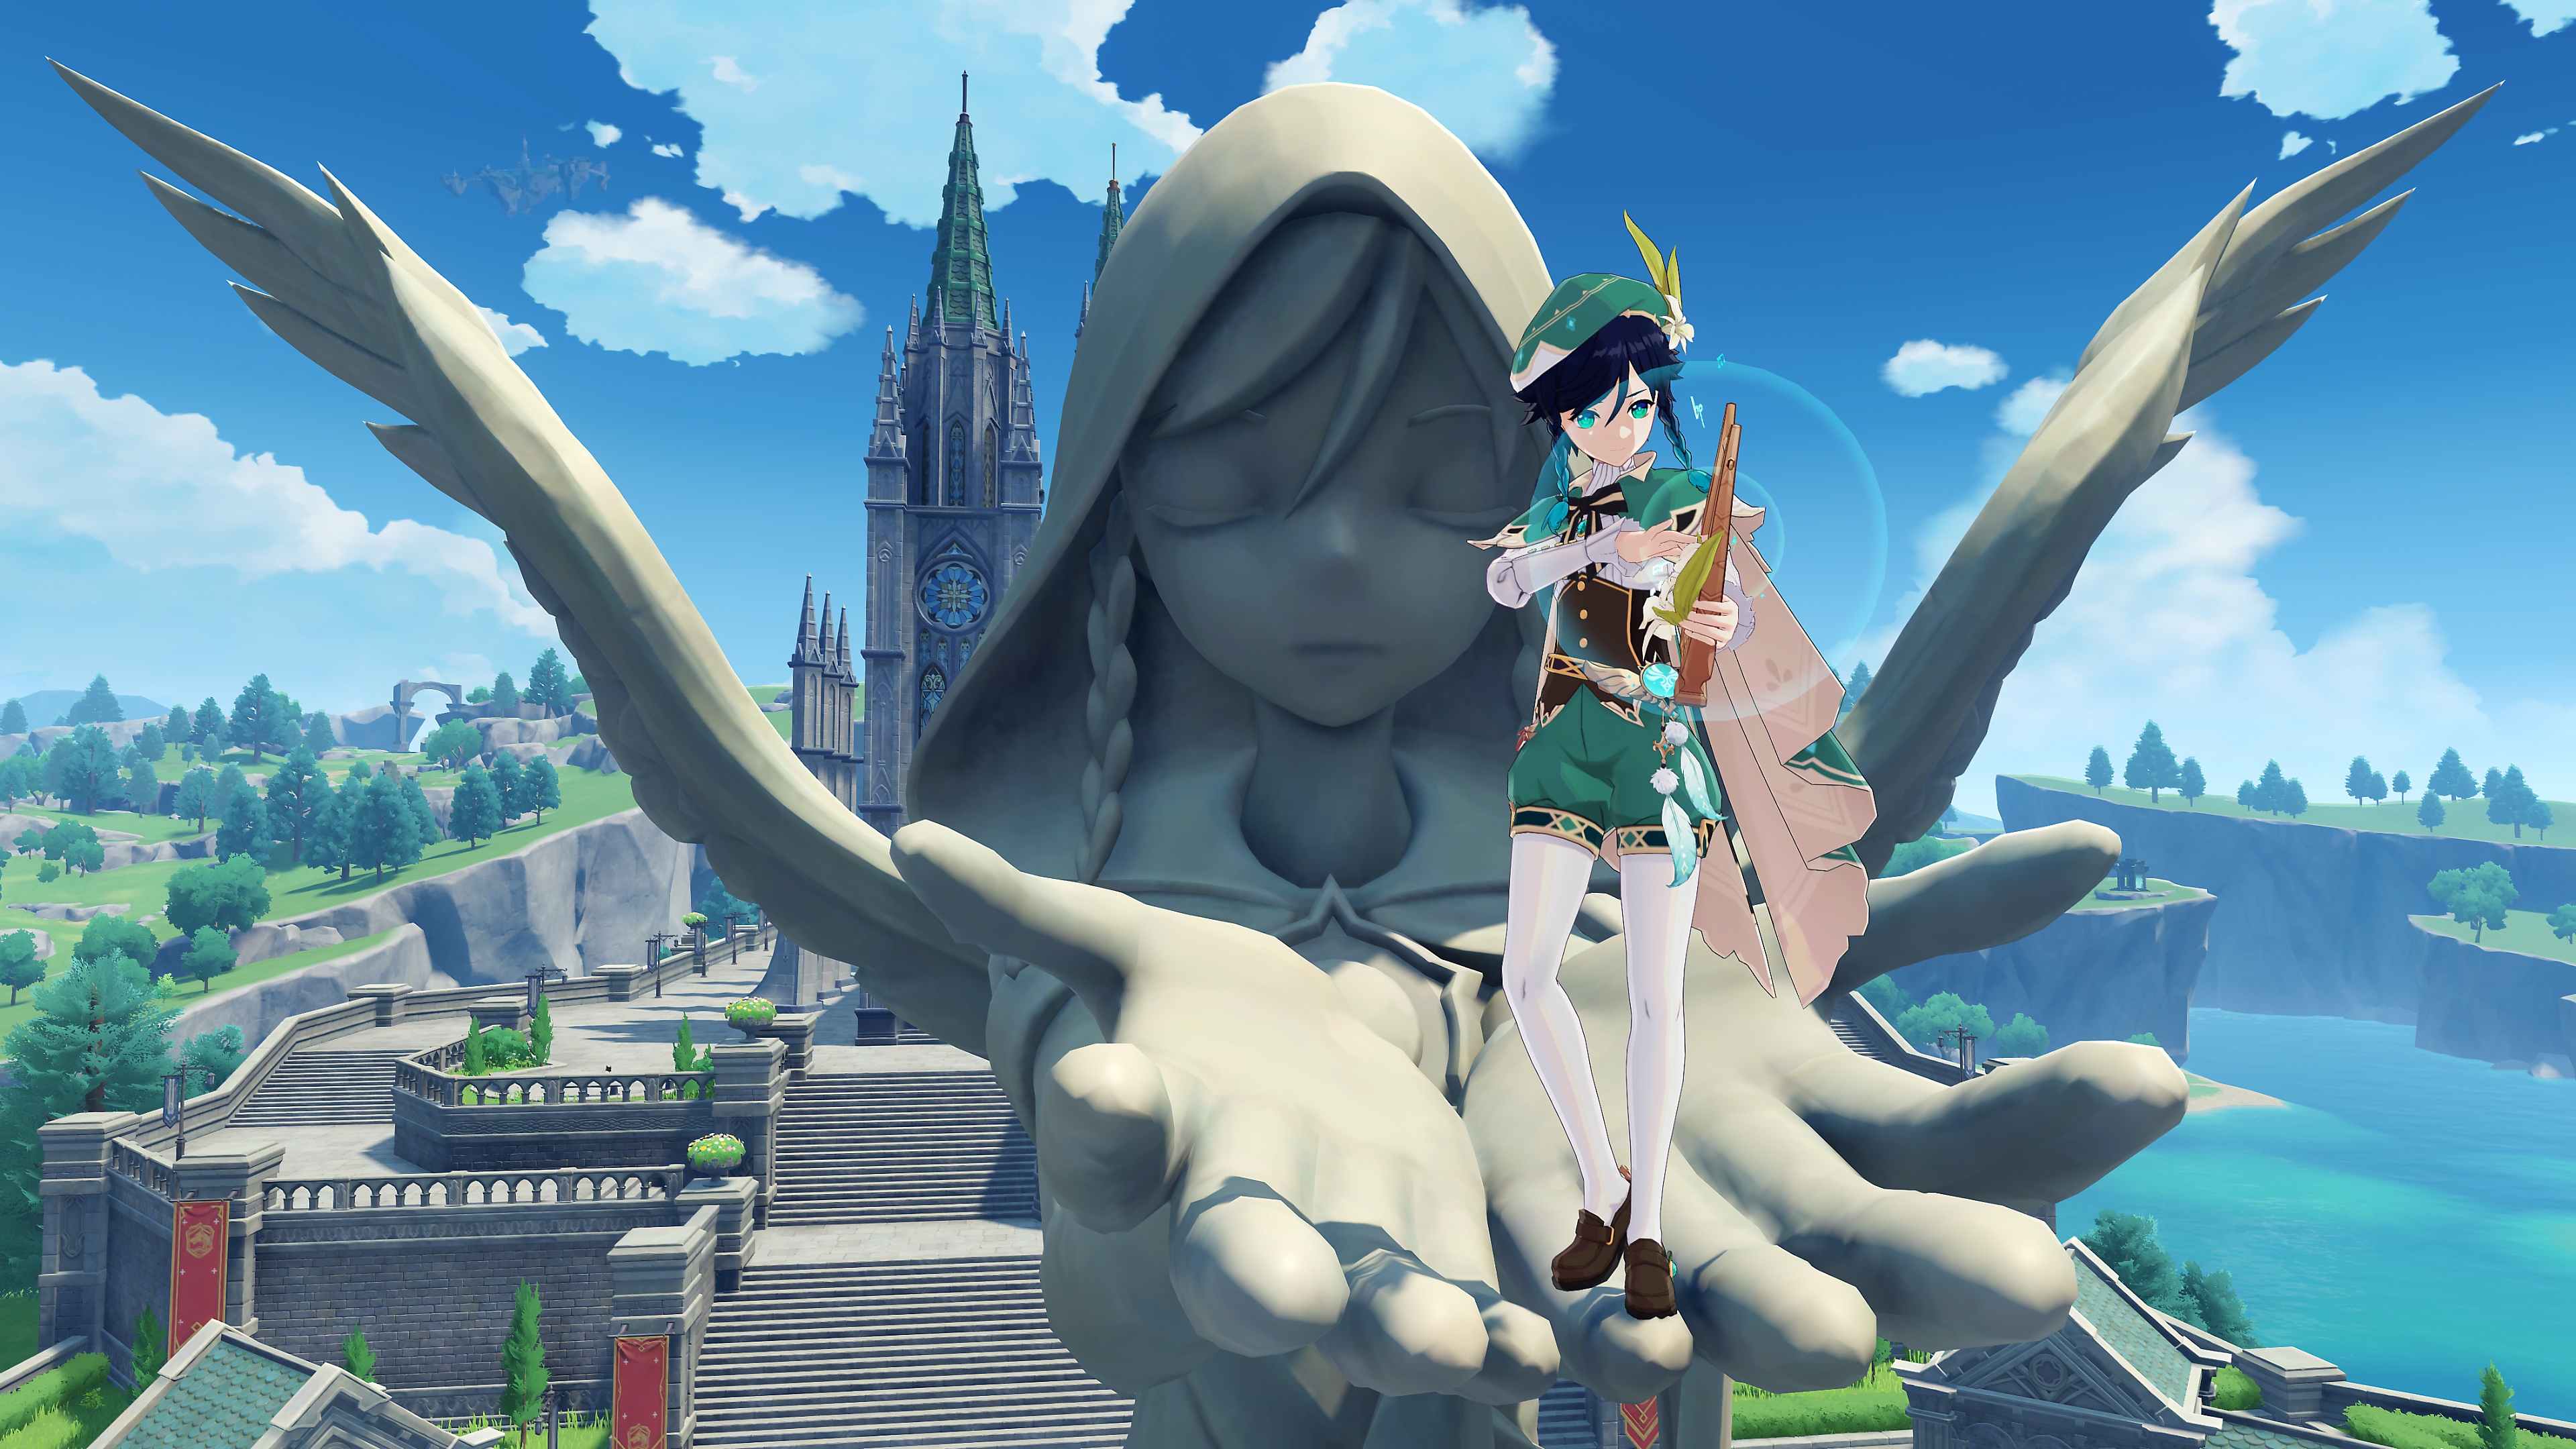 Genshin Impact: 2.6 Güncellemesi ekran görüntüsü, büyük ve taştan bir heykelin ellerinde duran bir karakteri gösteriyor